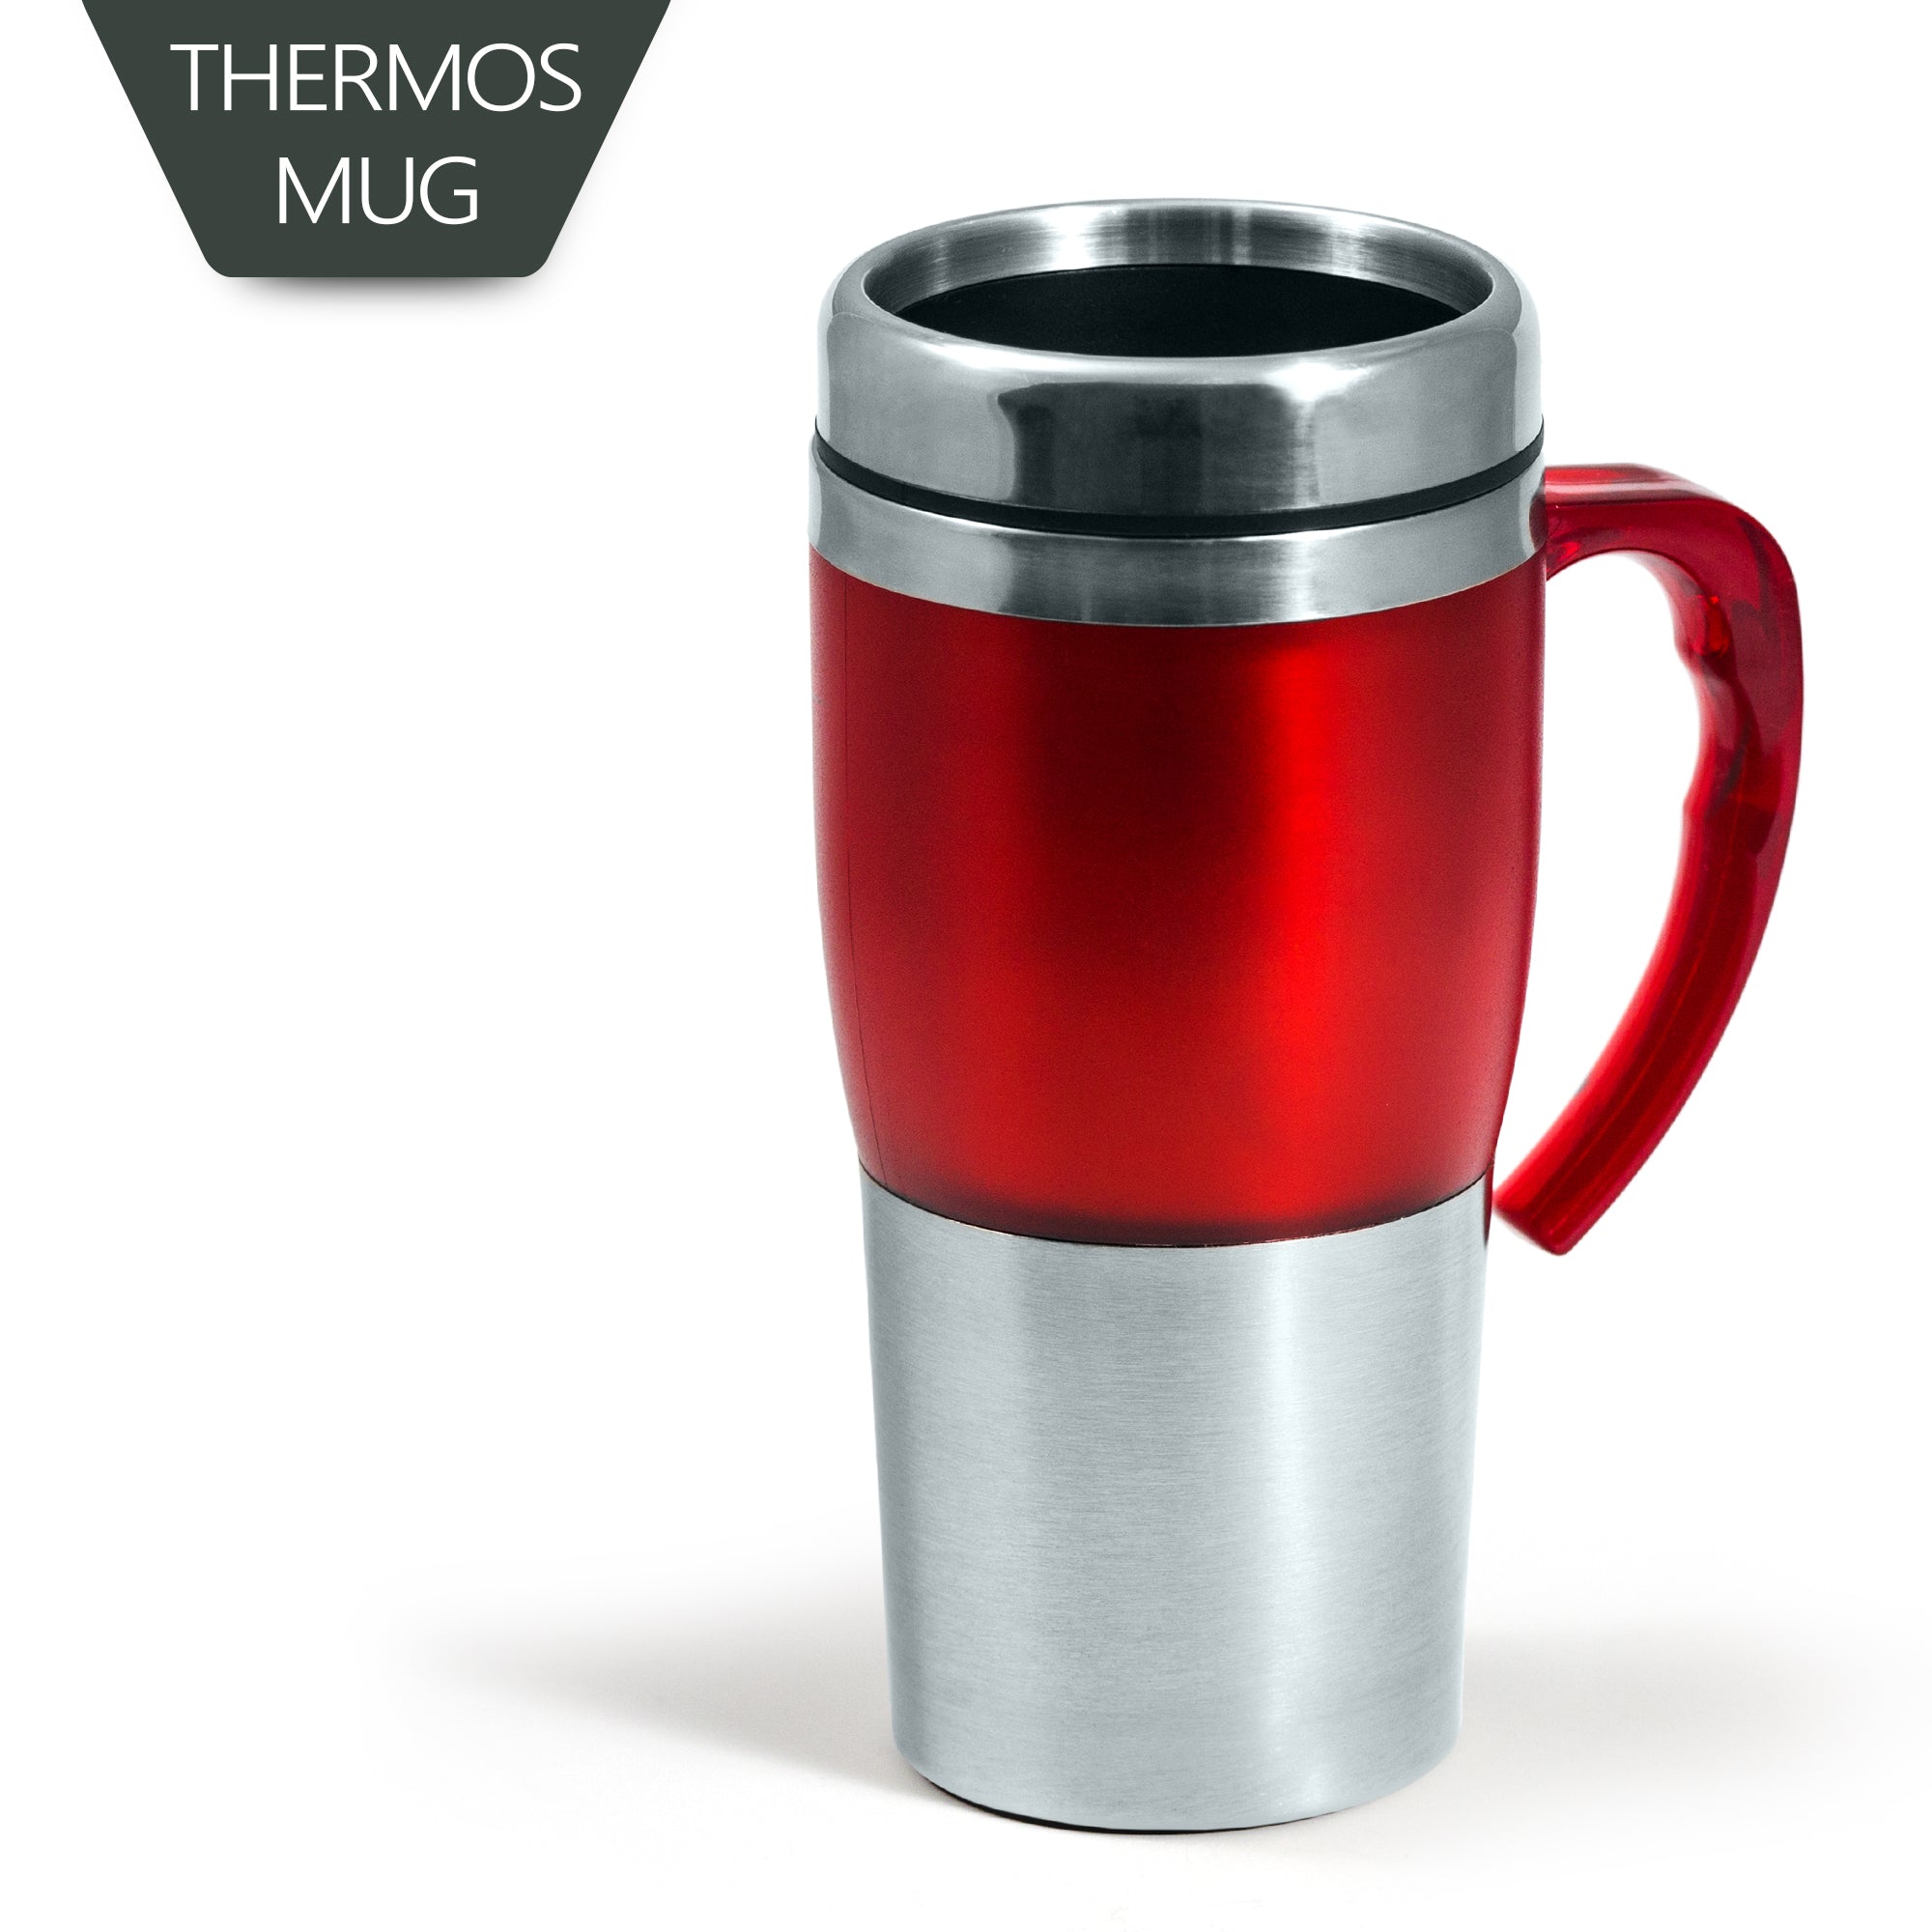 Thermos Mug - Red